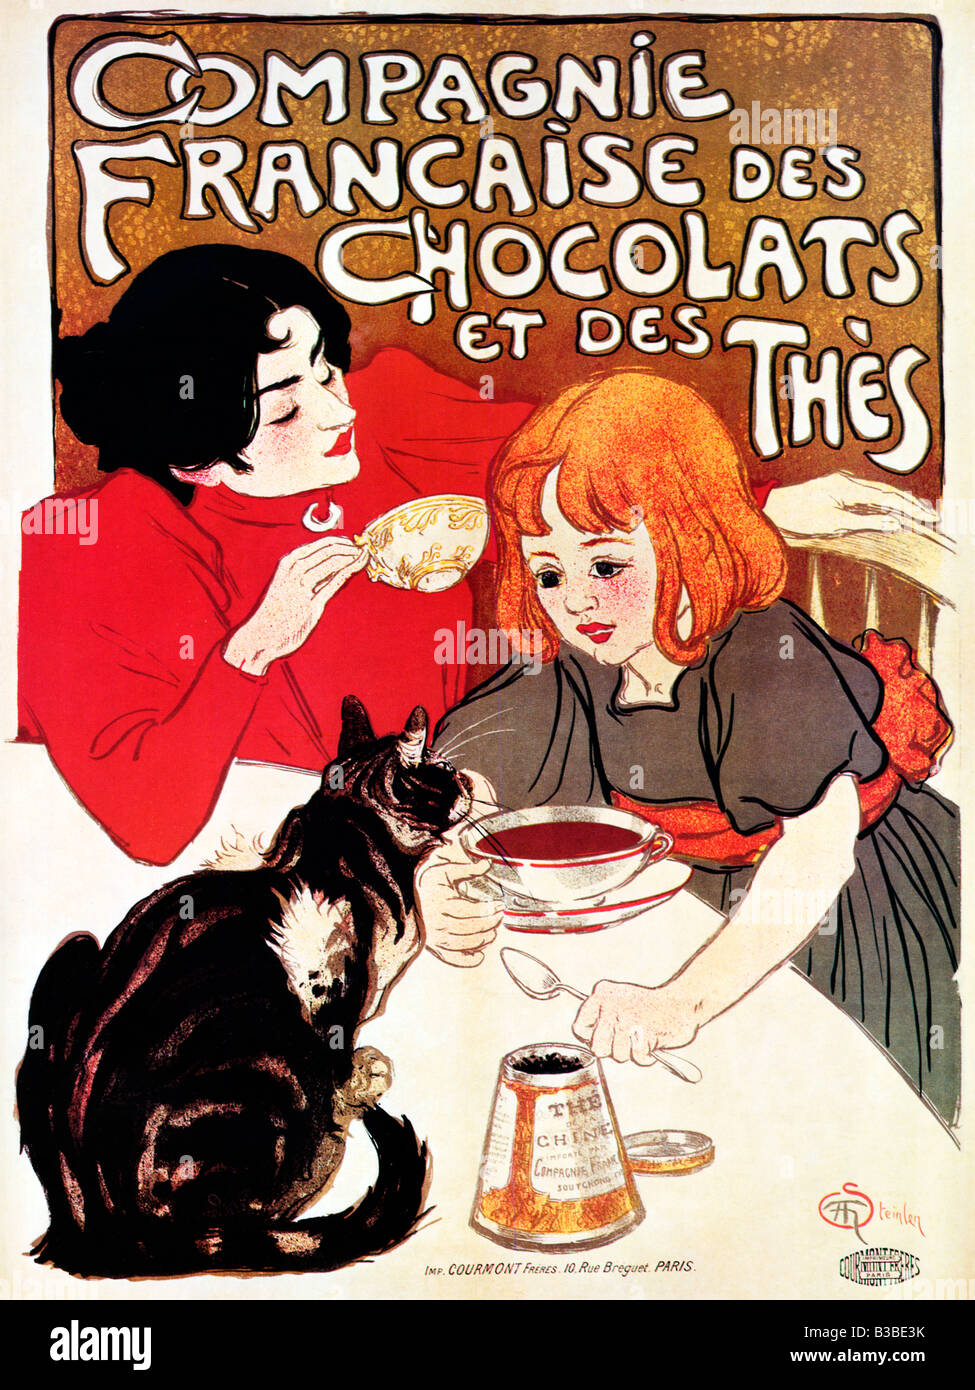 Steinlen Compagnie Francaise 1896 Art Nouveau poster Theophile Steinlen per Chocolats et des TS Foto Stock